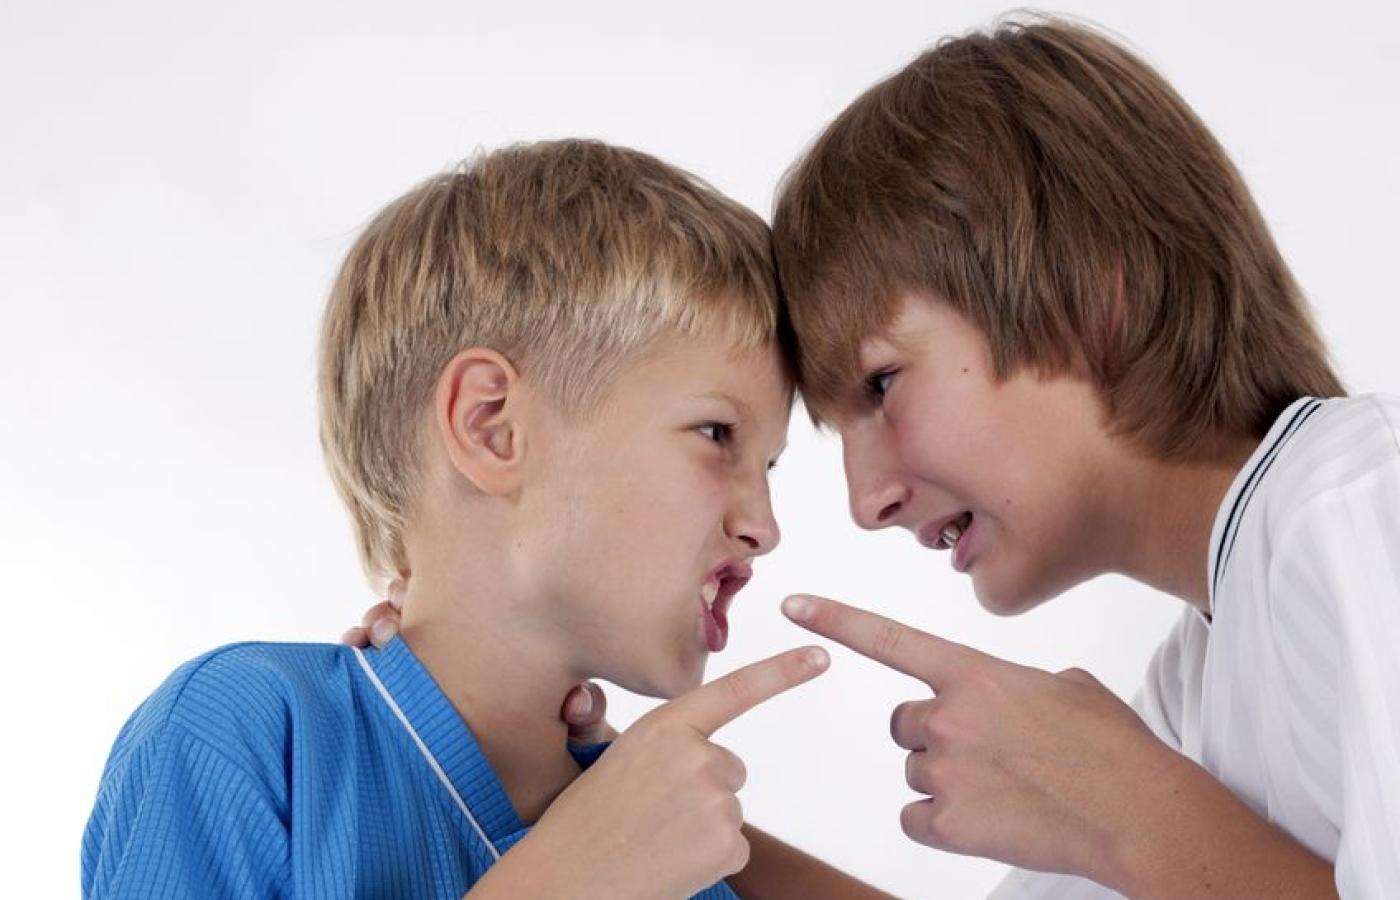 Конфликт между мальчиками. Конфликт между детьми. Конфликты в подростковом возрасте. Два мальчика спорят.